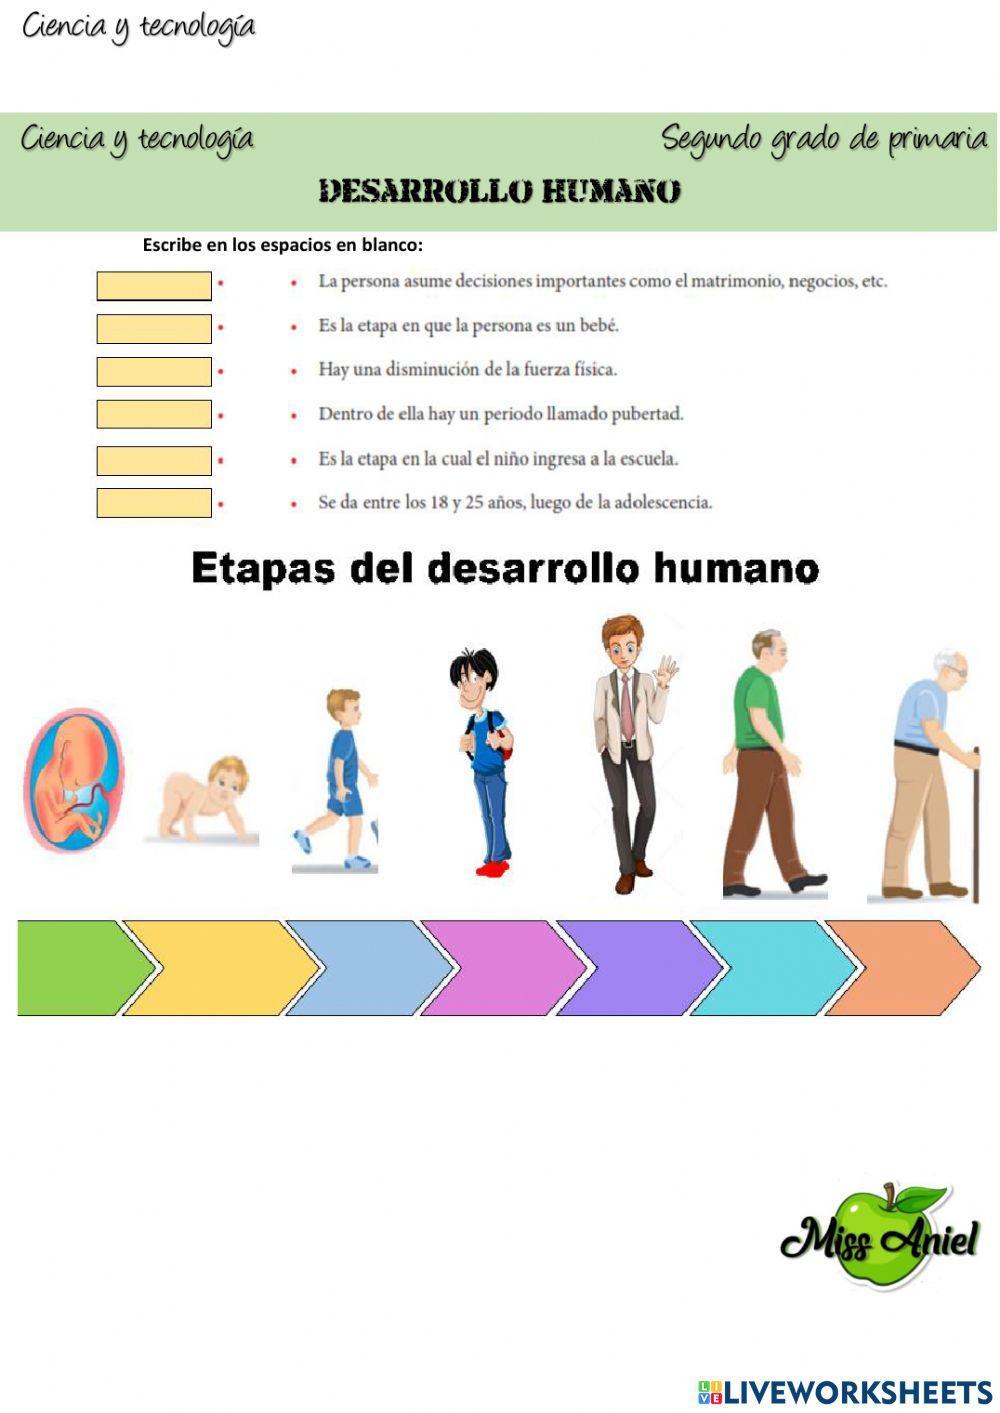 Etapas del desarrollo humano online pdf worksheet | Live Worksheets